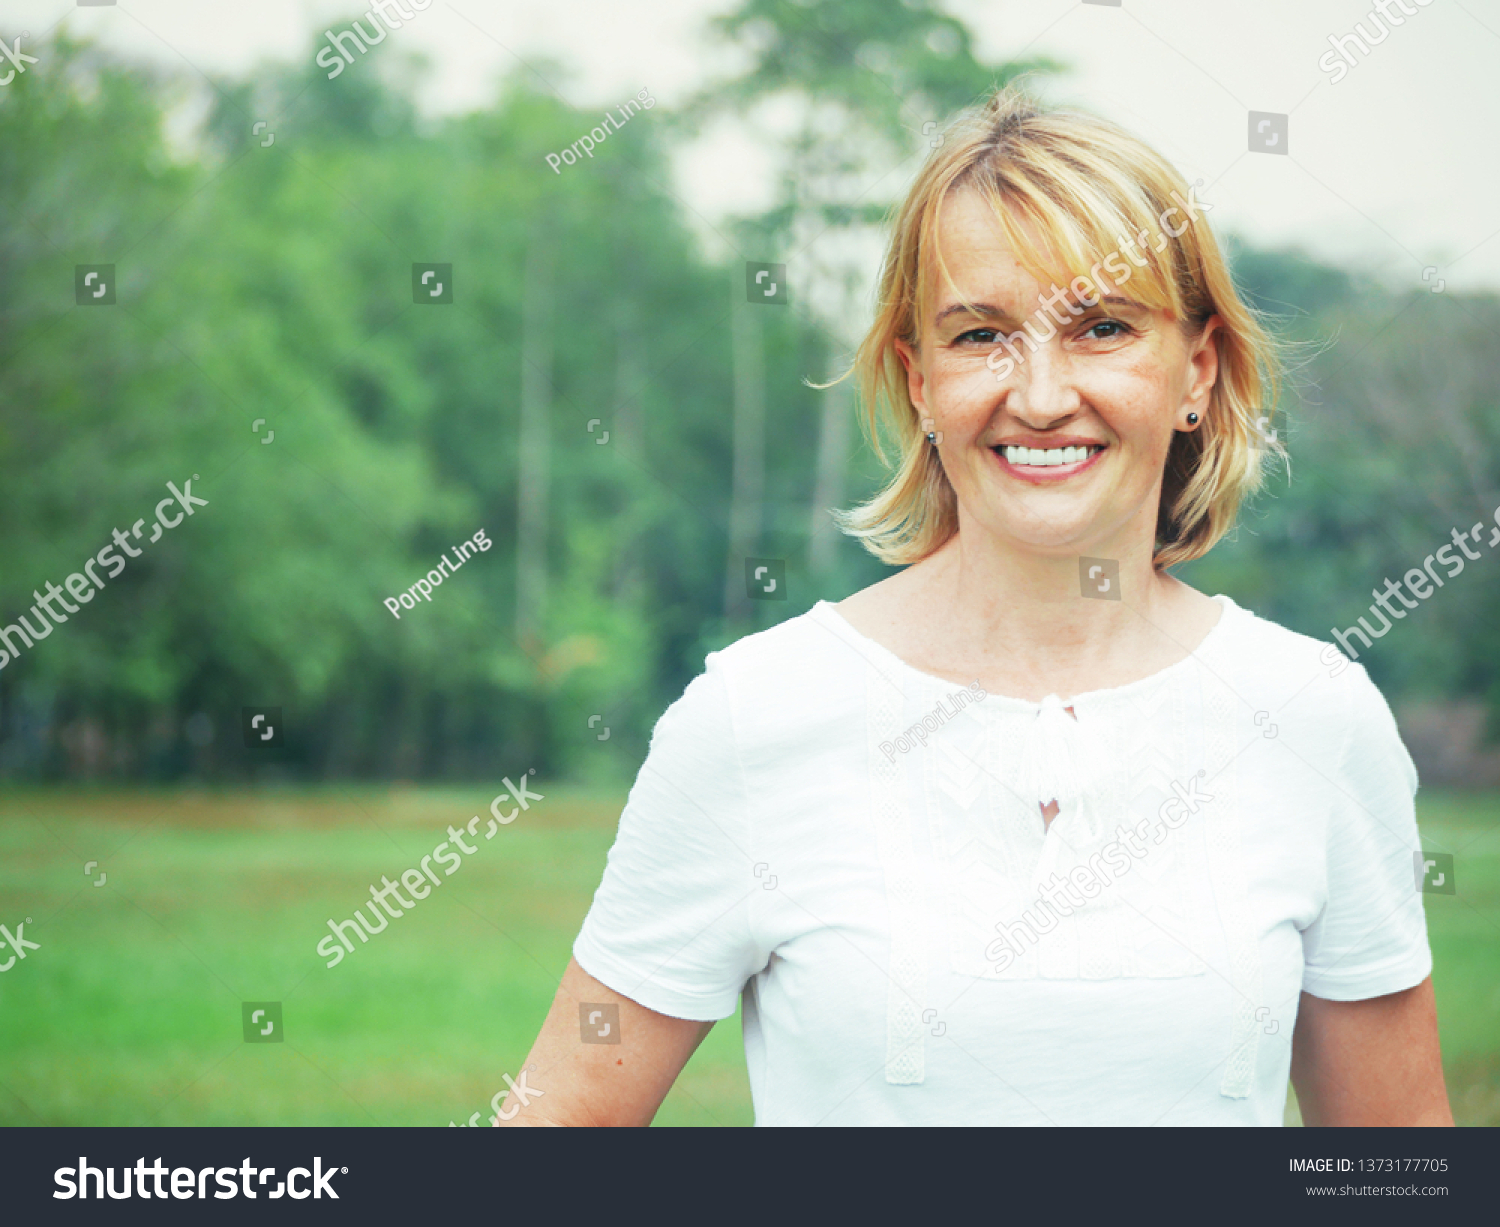 25 Imágenes De 51 Year Old Woman Imágenes Fotos Y Vectores De Stock Shutterstock 